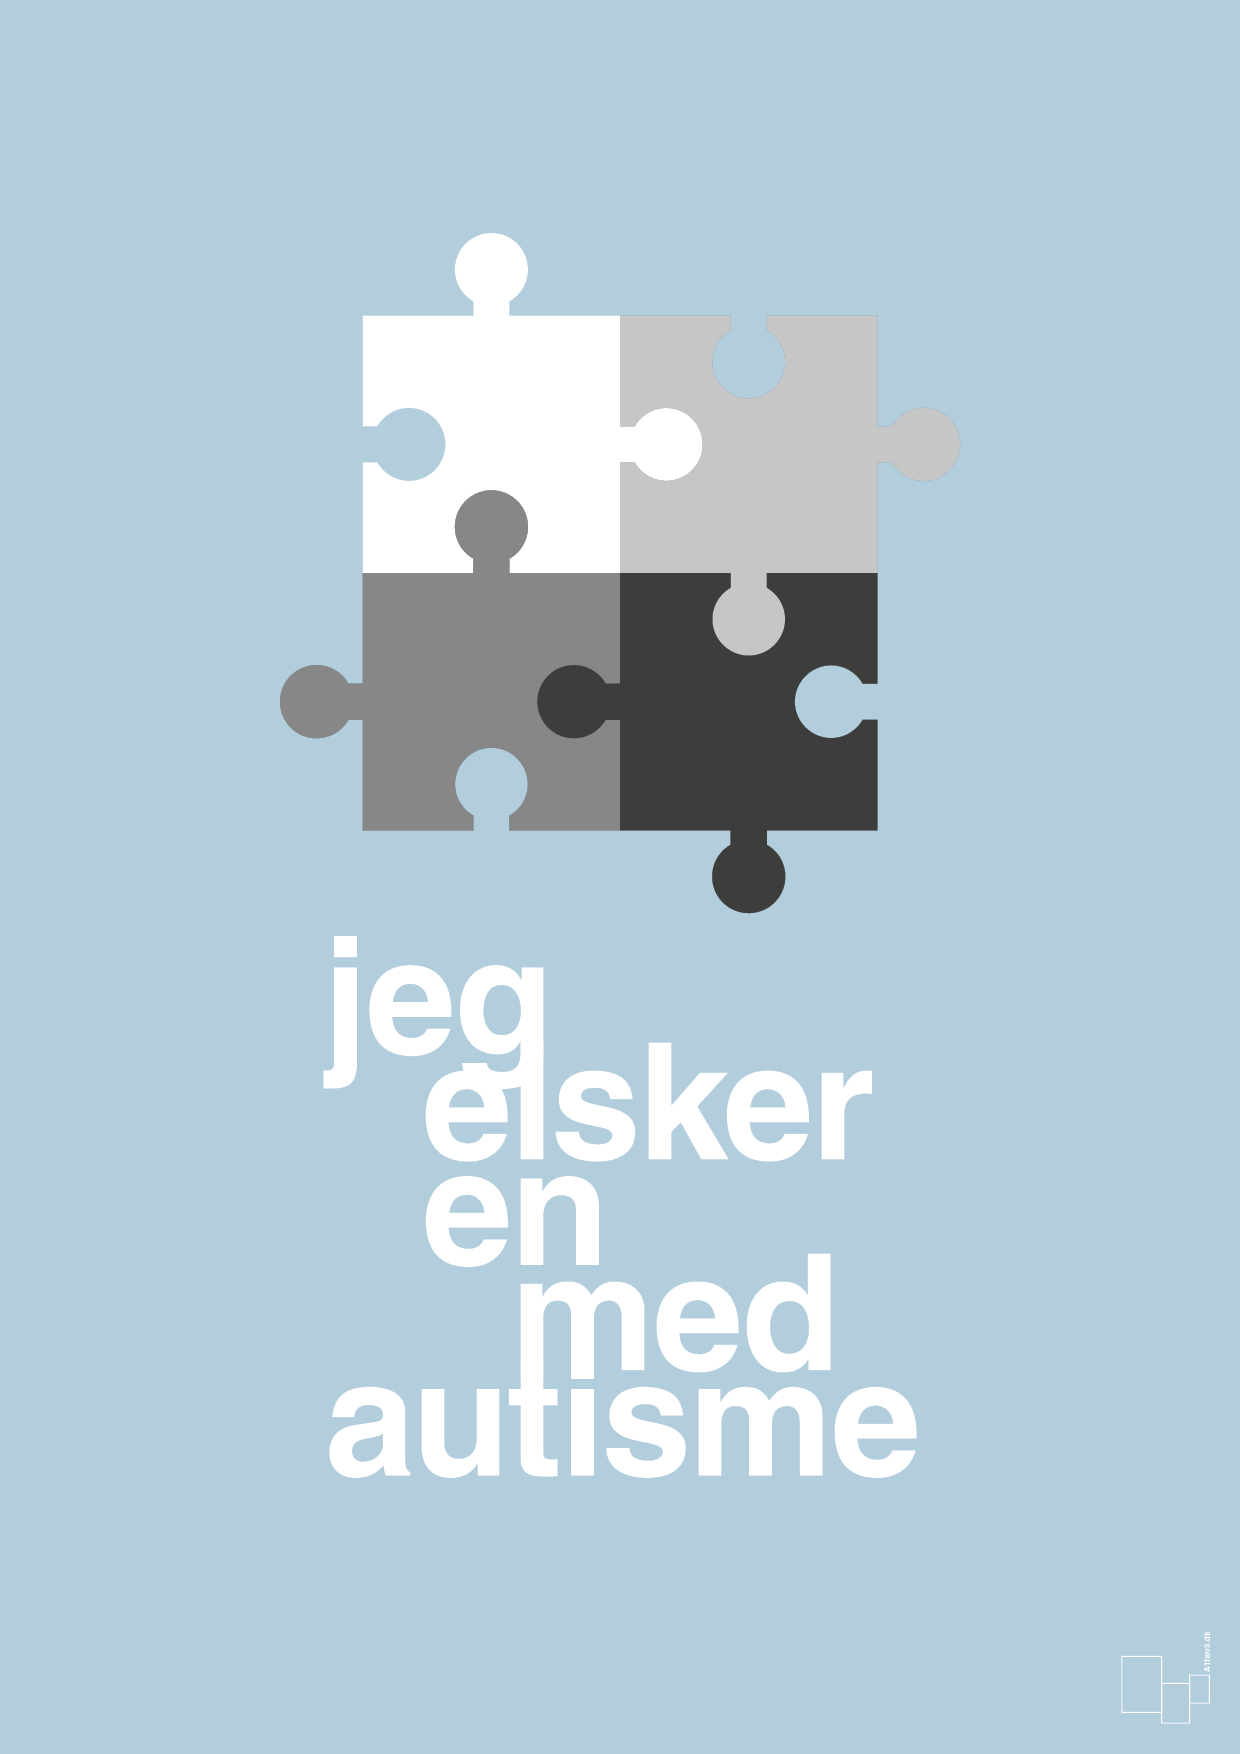 jeg elsker en med autisme - Plakat med Samfund i Heavenly Blue